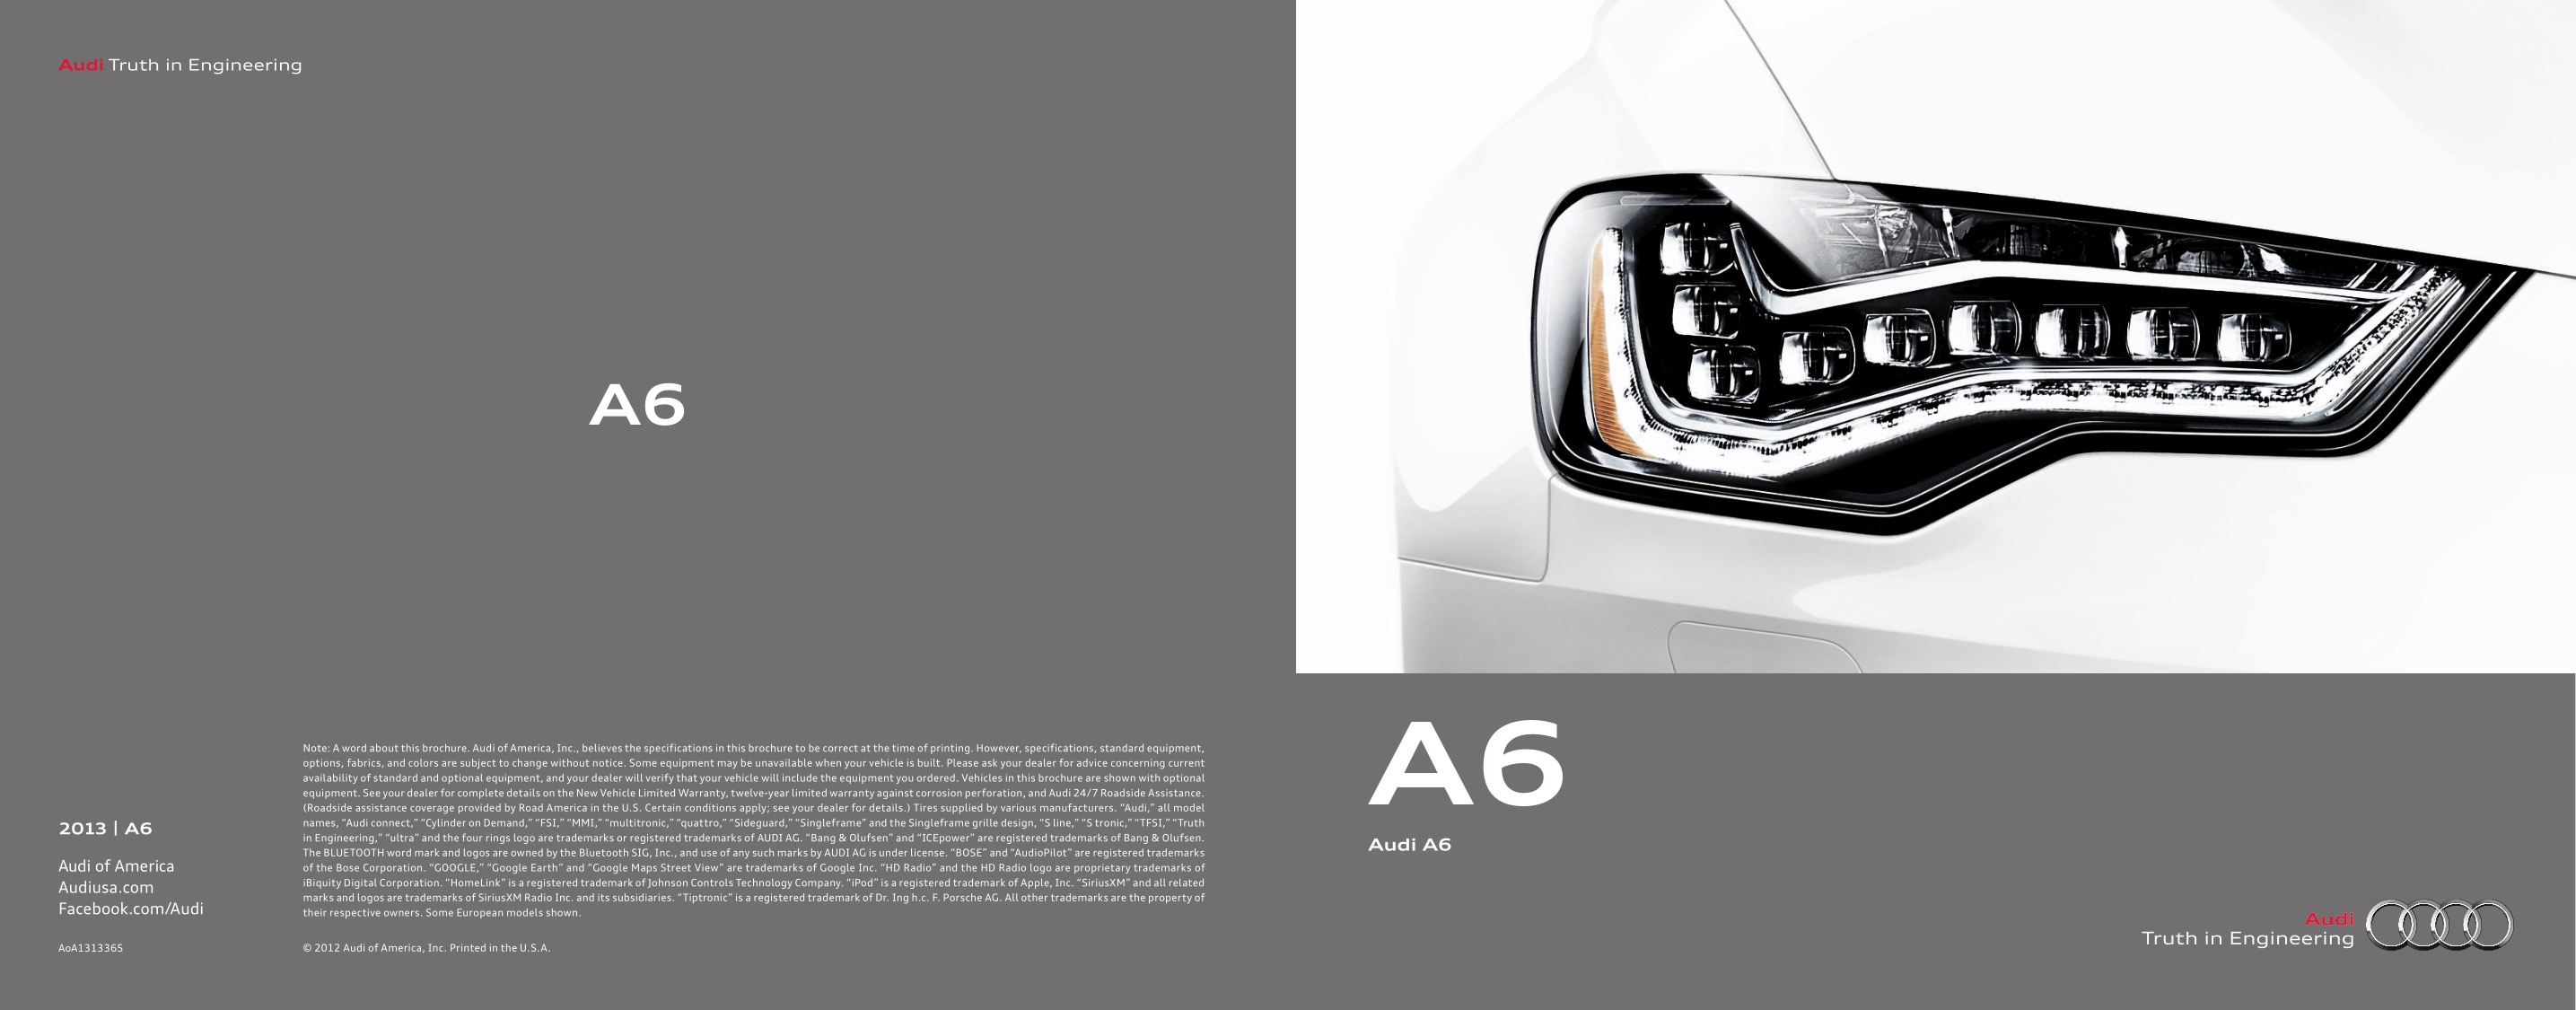 2013 Audi A6 Brochure